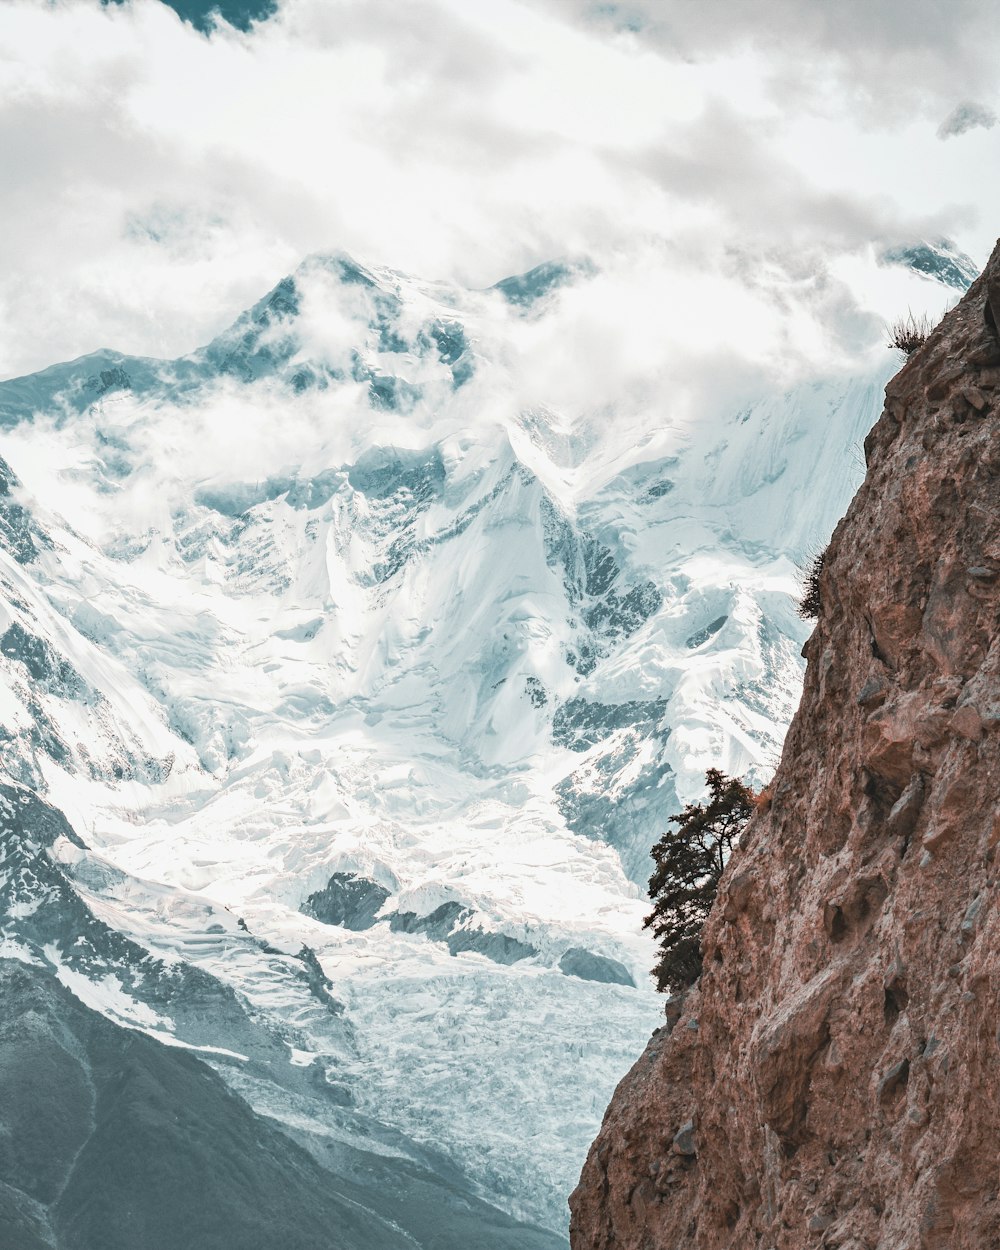 Un hombre parado en la cima de una montaña junto a una montaña cubierta de nieve